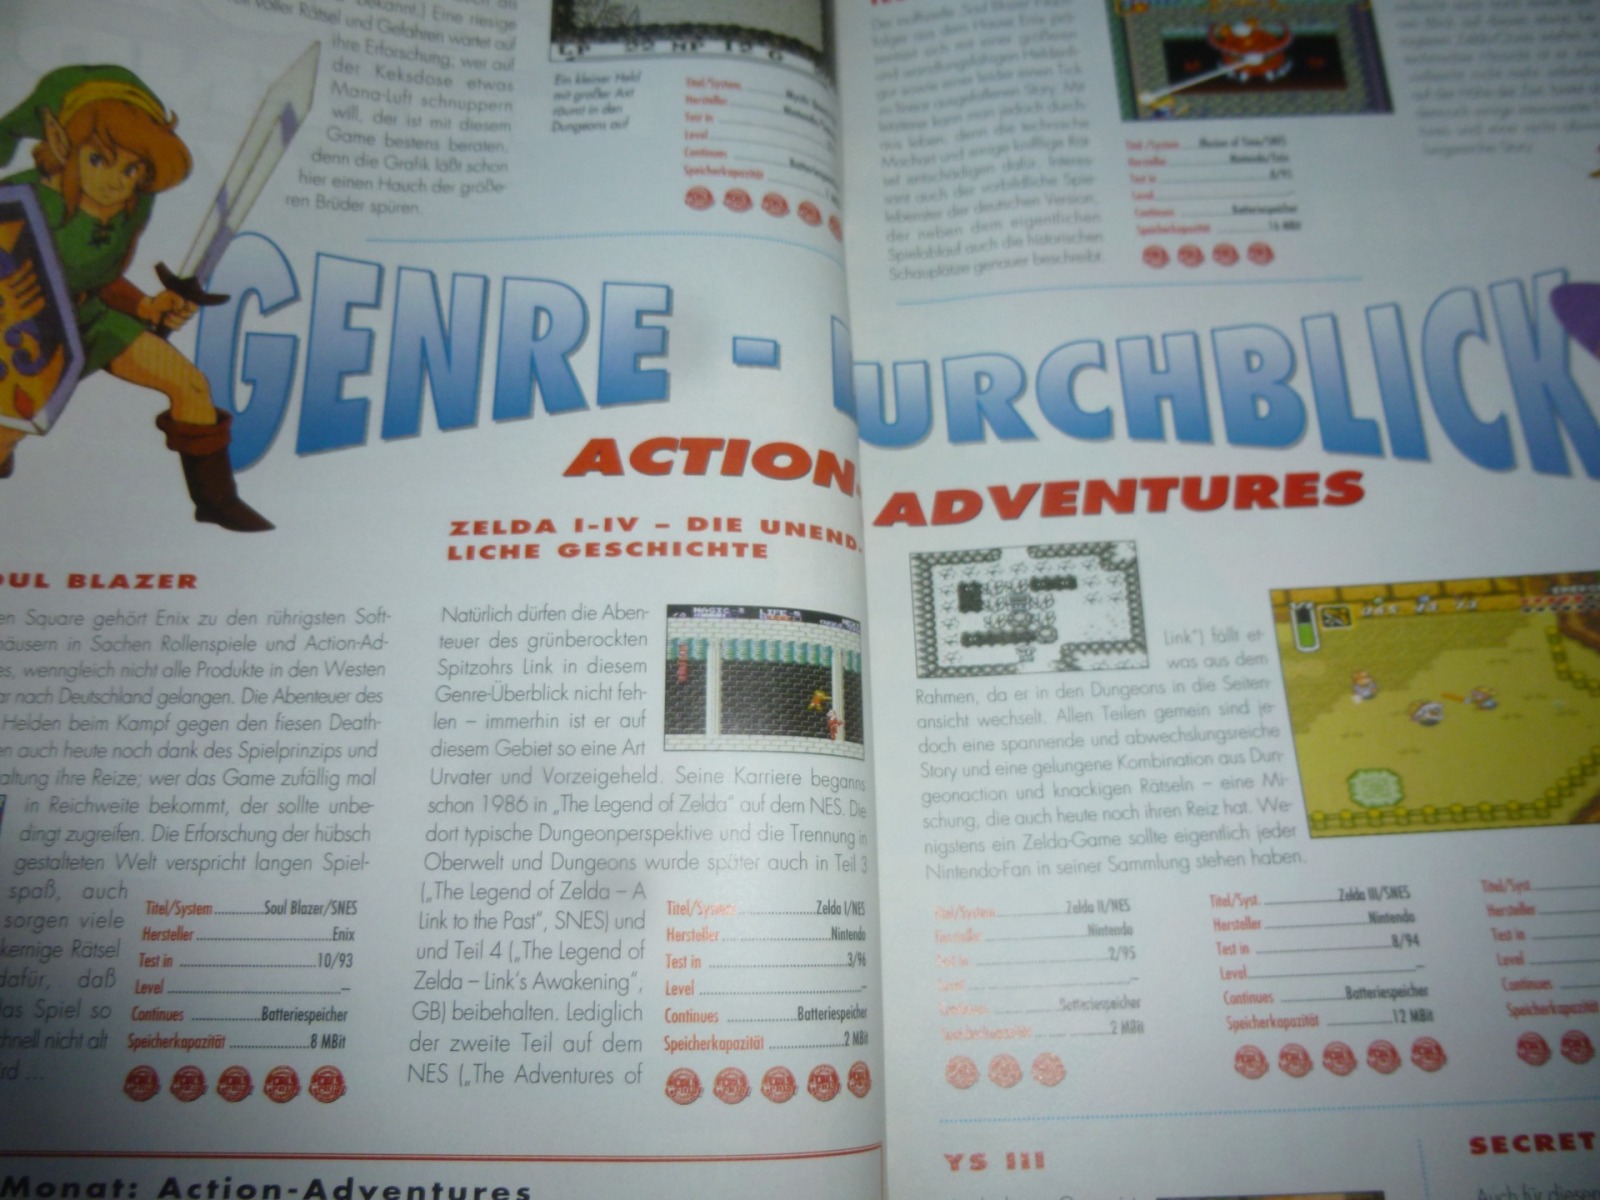 TOTAL Das unabhängige Magazin - 100 Nintendo - Ausgabe 3/96 1996 21